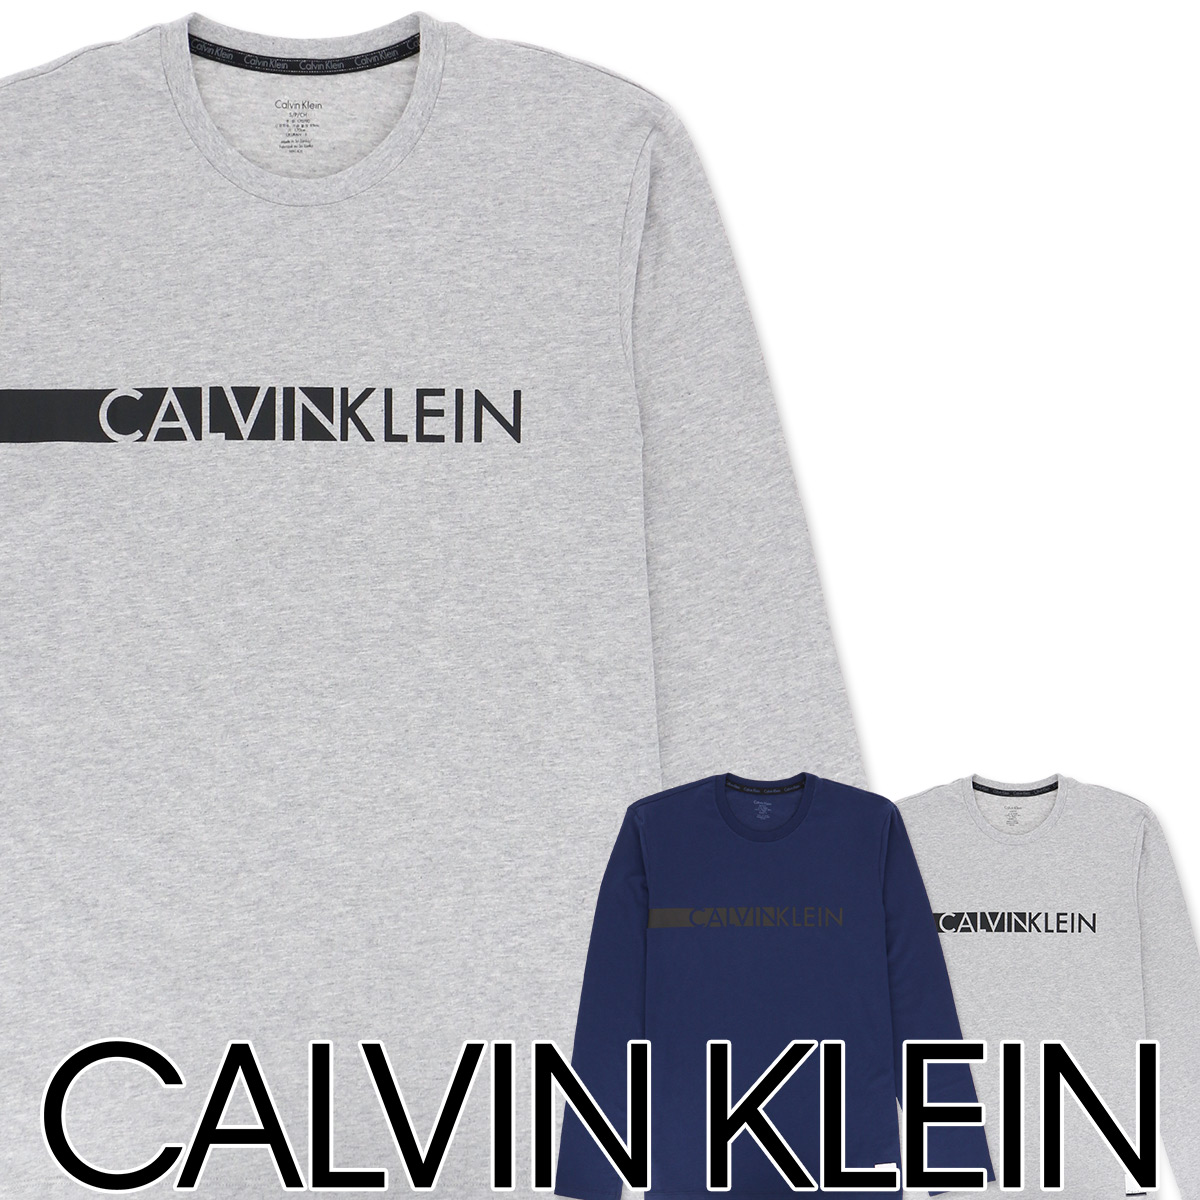 calvin klein t shirt sale